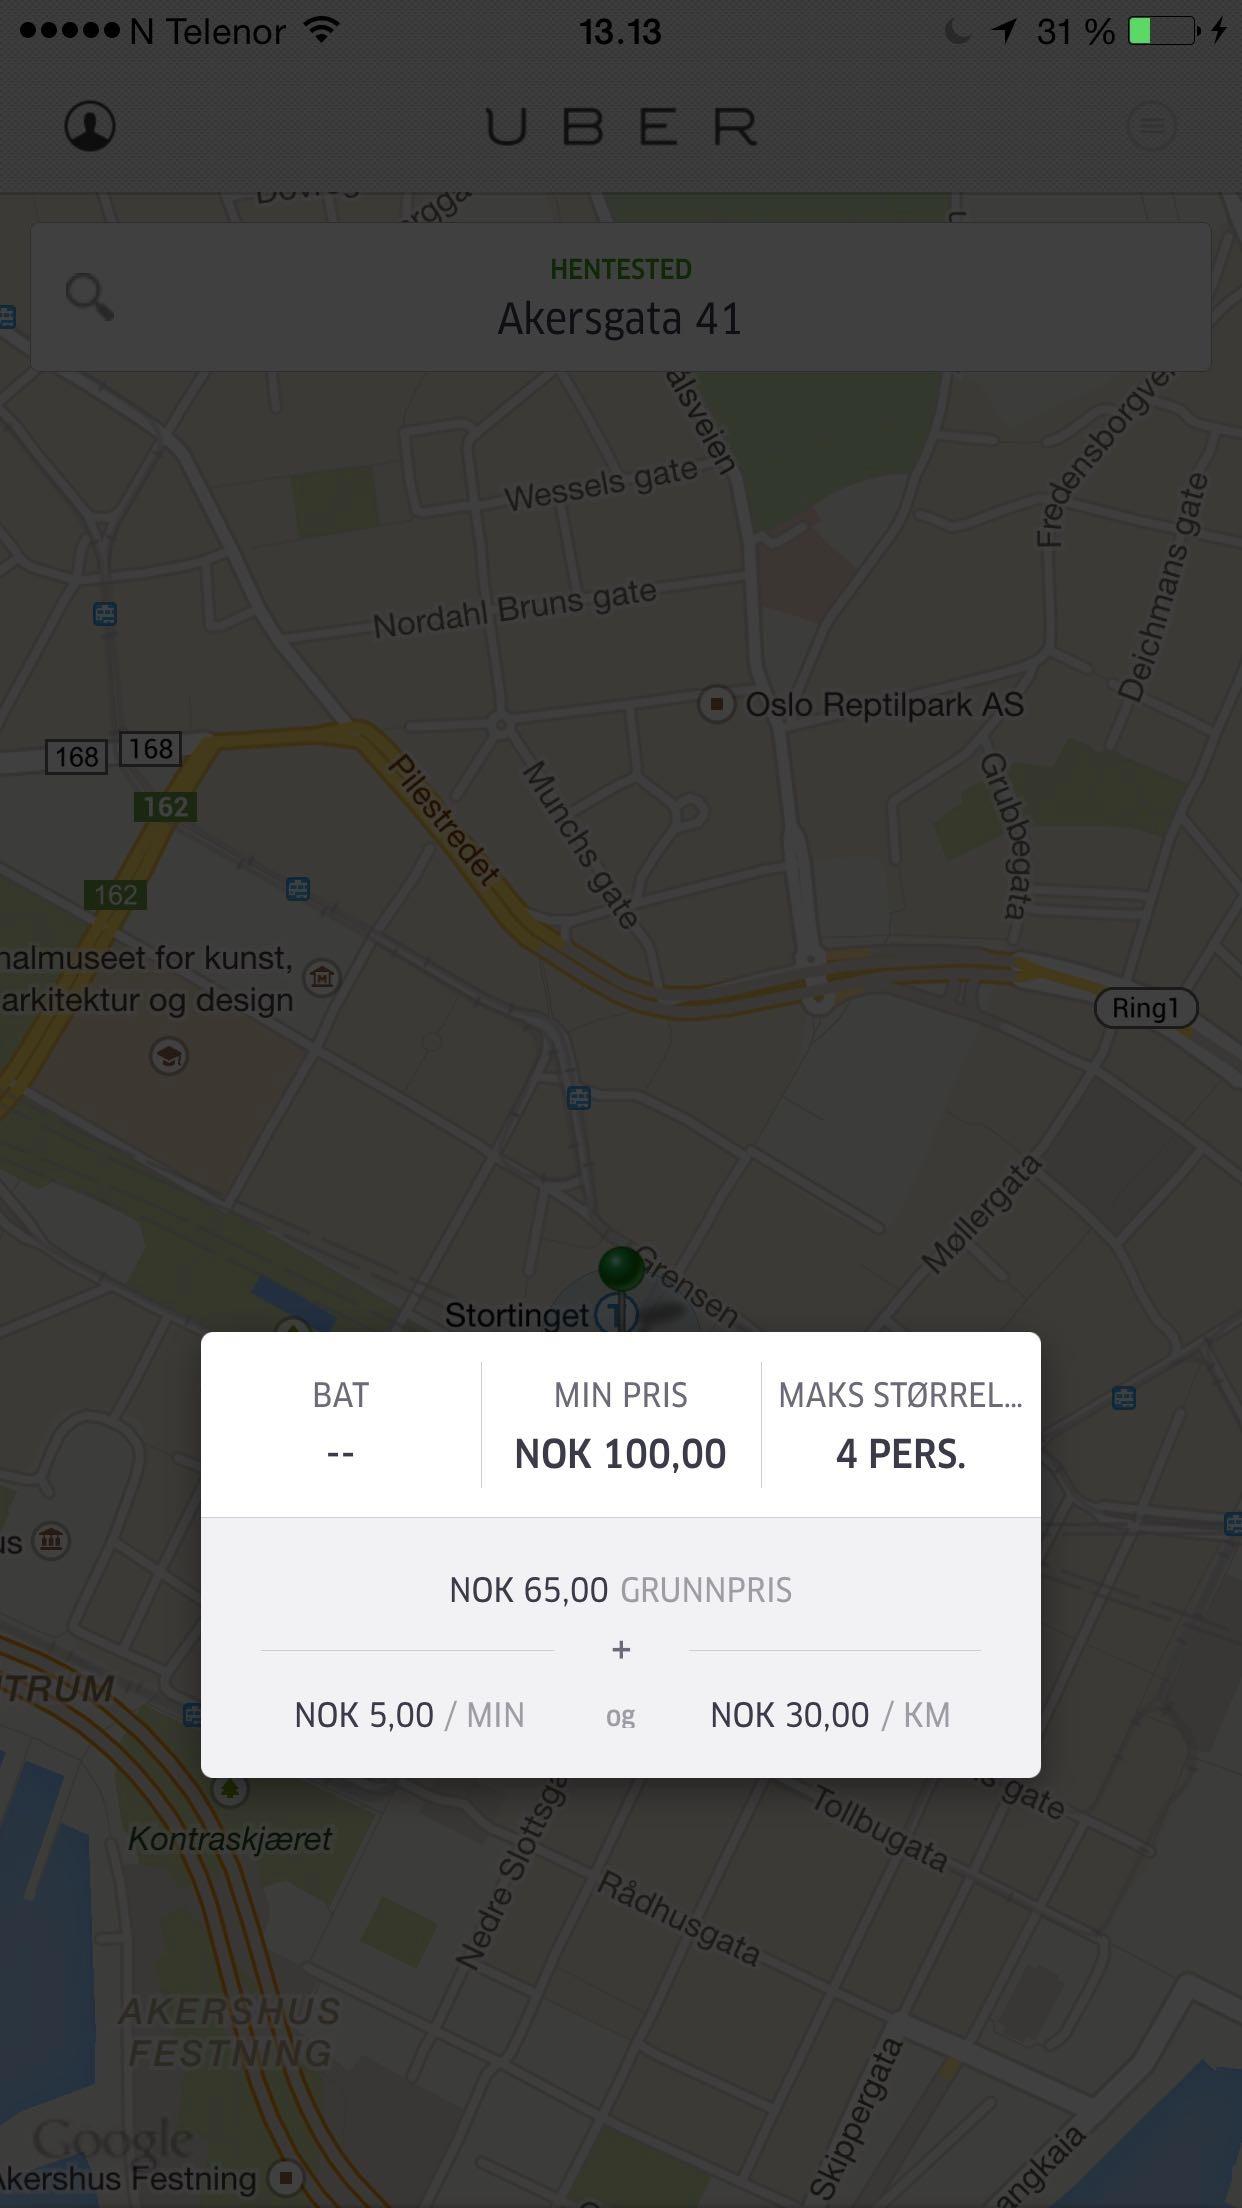 Kostbare biler ser ut til å gi høye priser. UberPOP skal være langt rimeligere å bruke enn UberBLACK.Foto: Finn Jarle Kvalheim, Tek.no